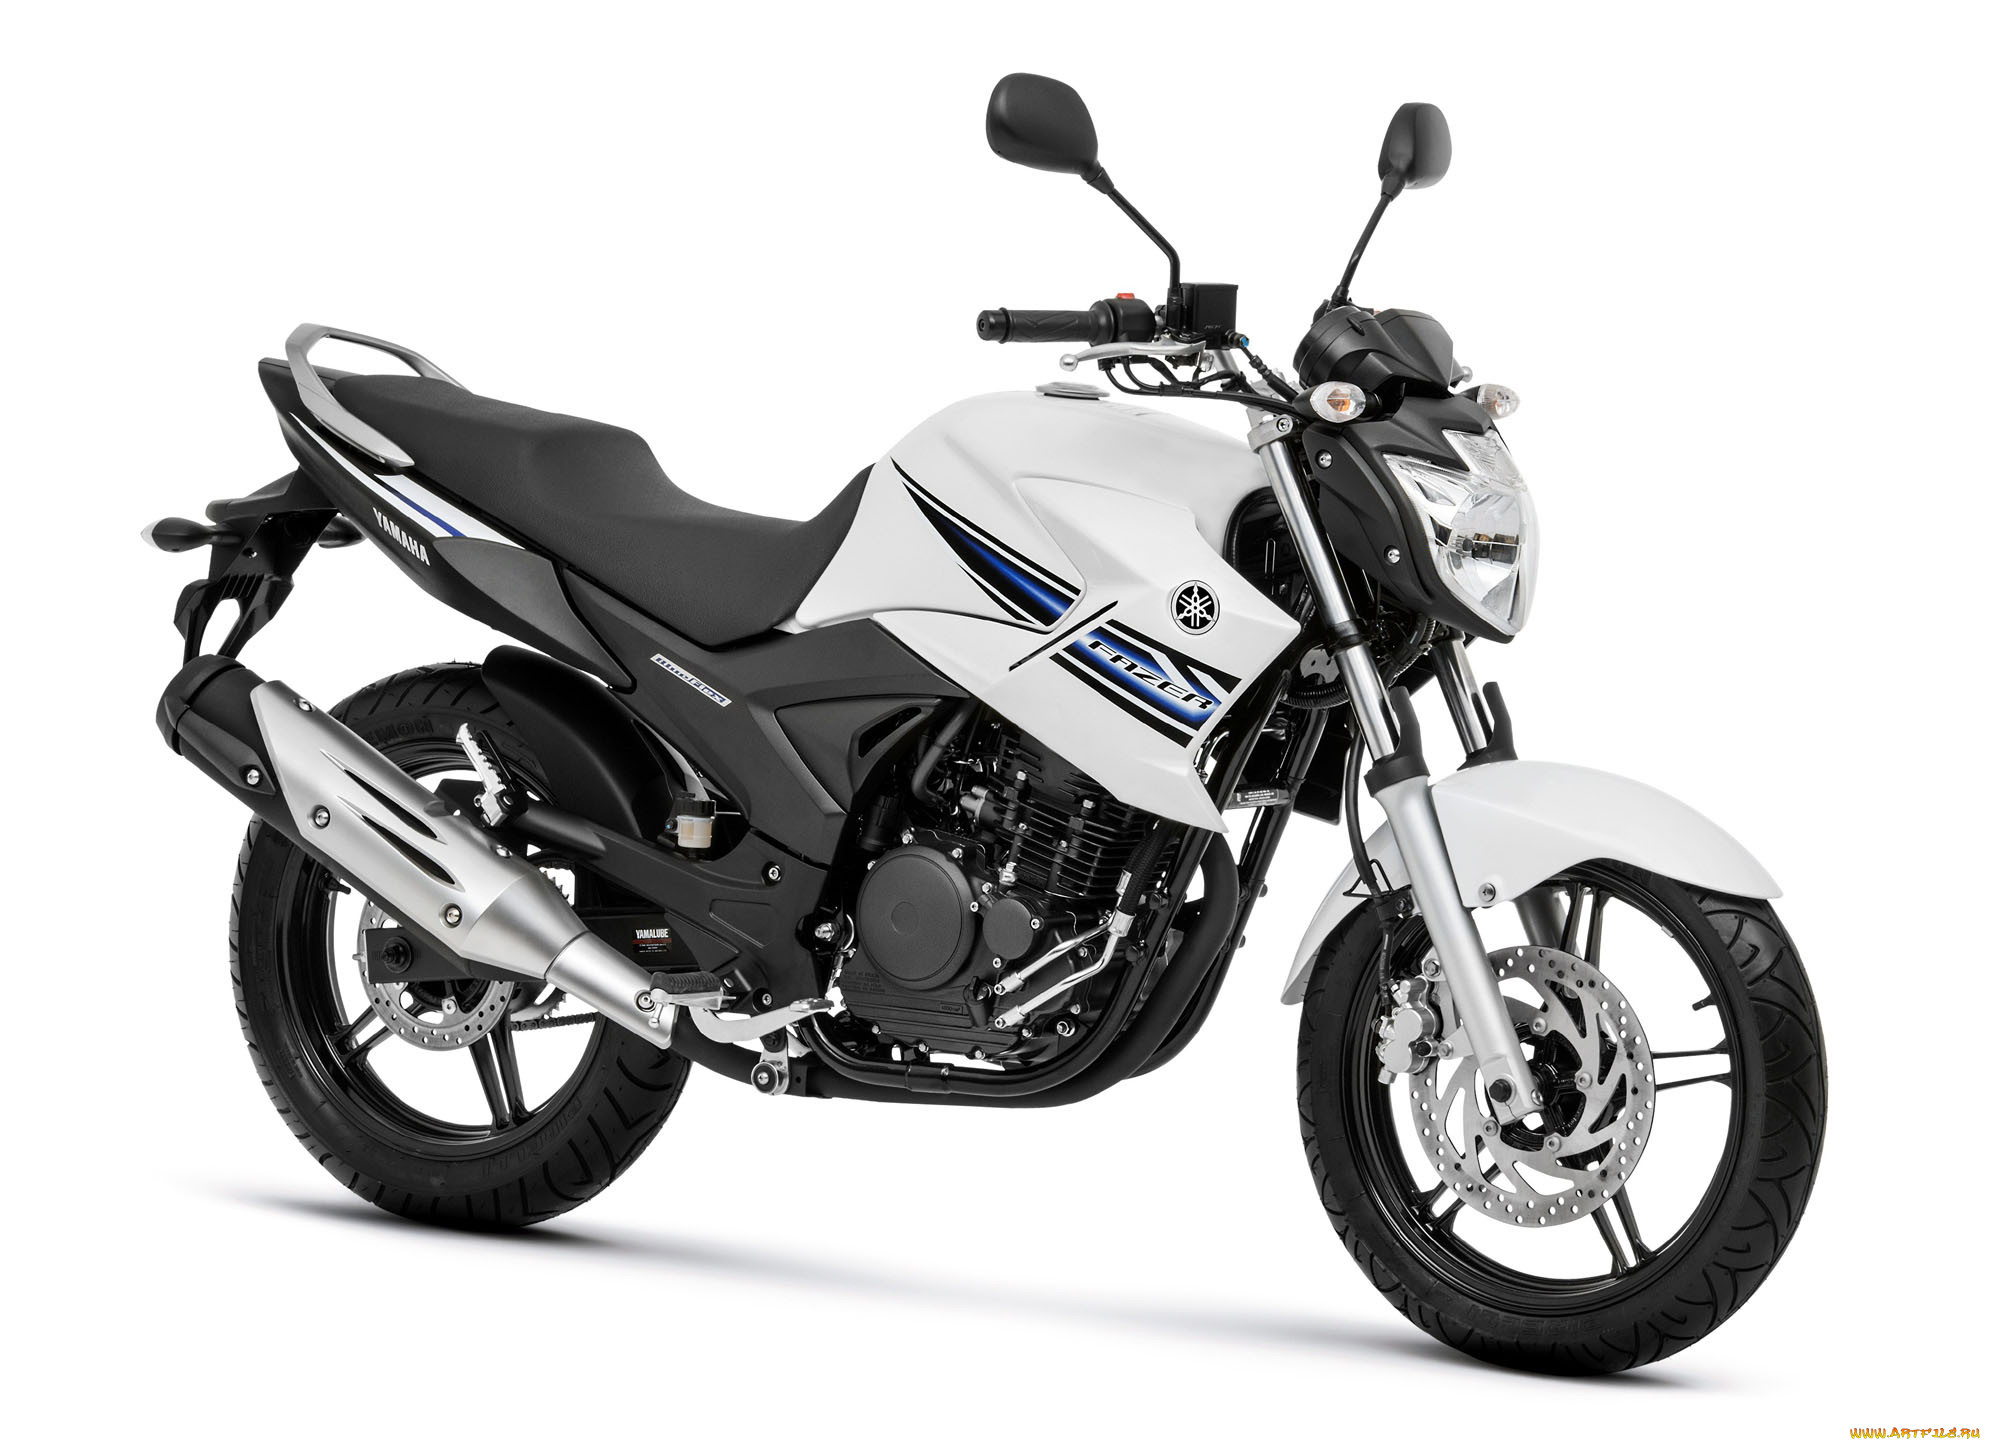 Yamaha fazer 250. Yamaha FZ 250 fazer. Yamaha fazer 2014. Yamaha fazer 2016.